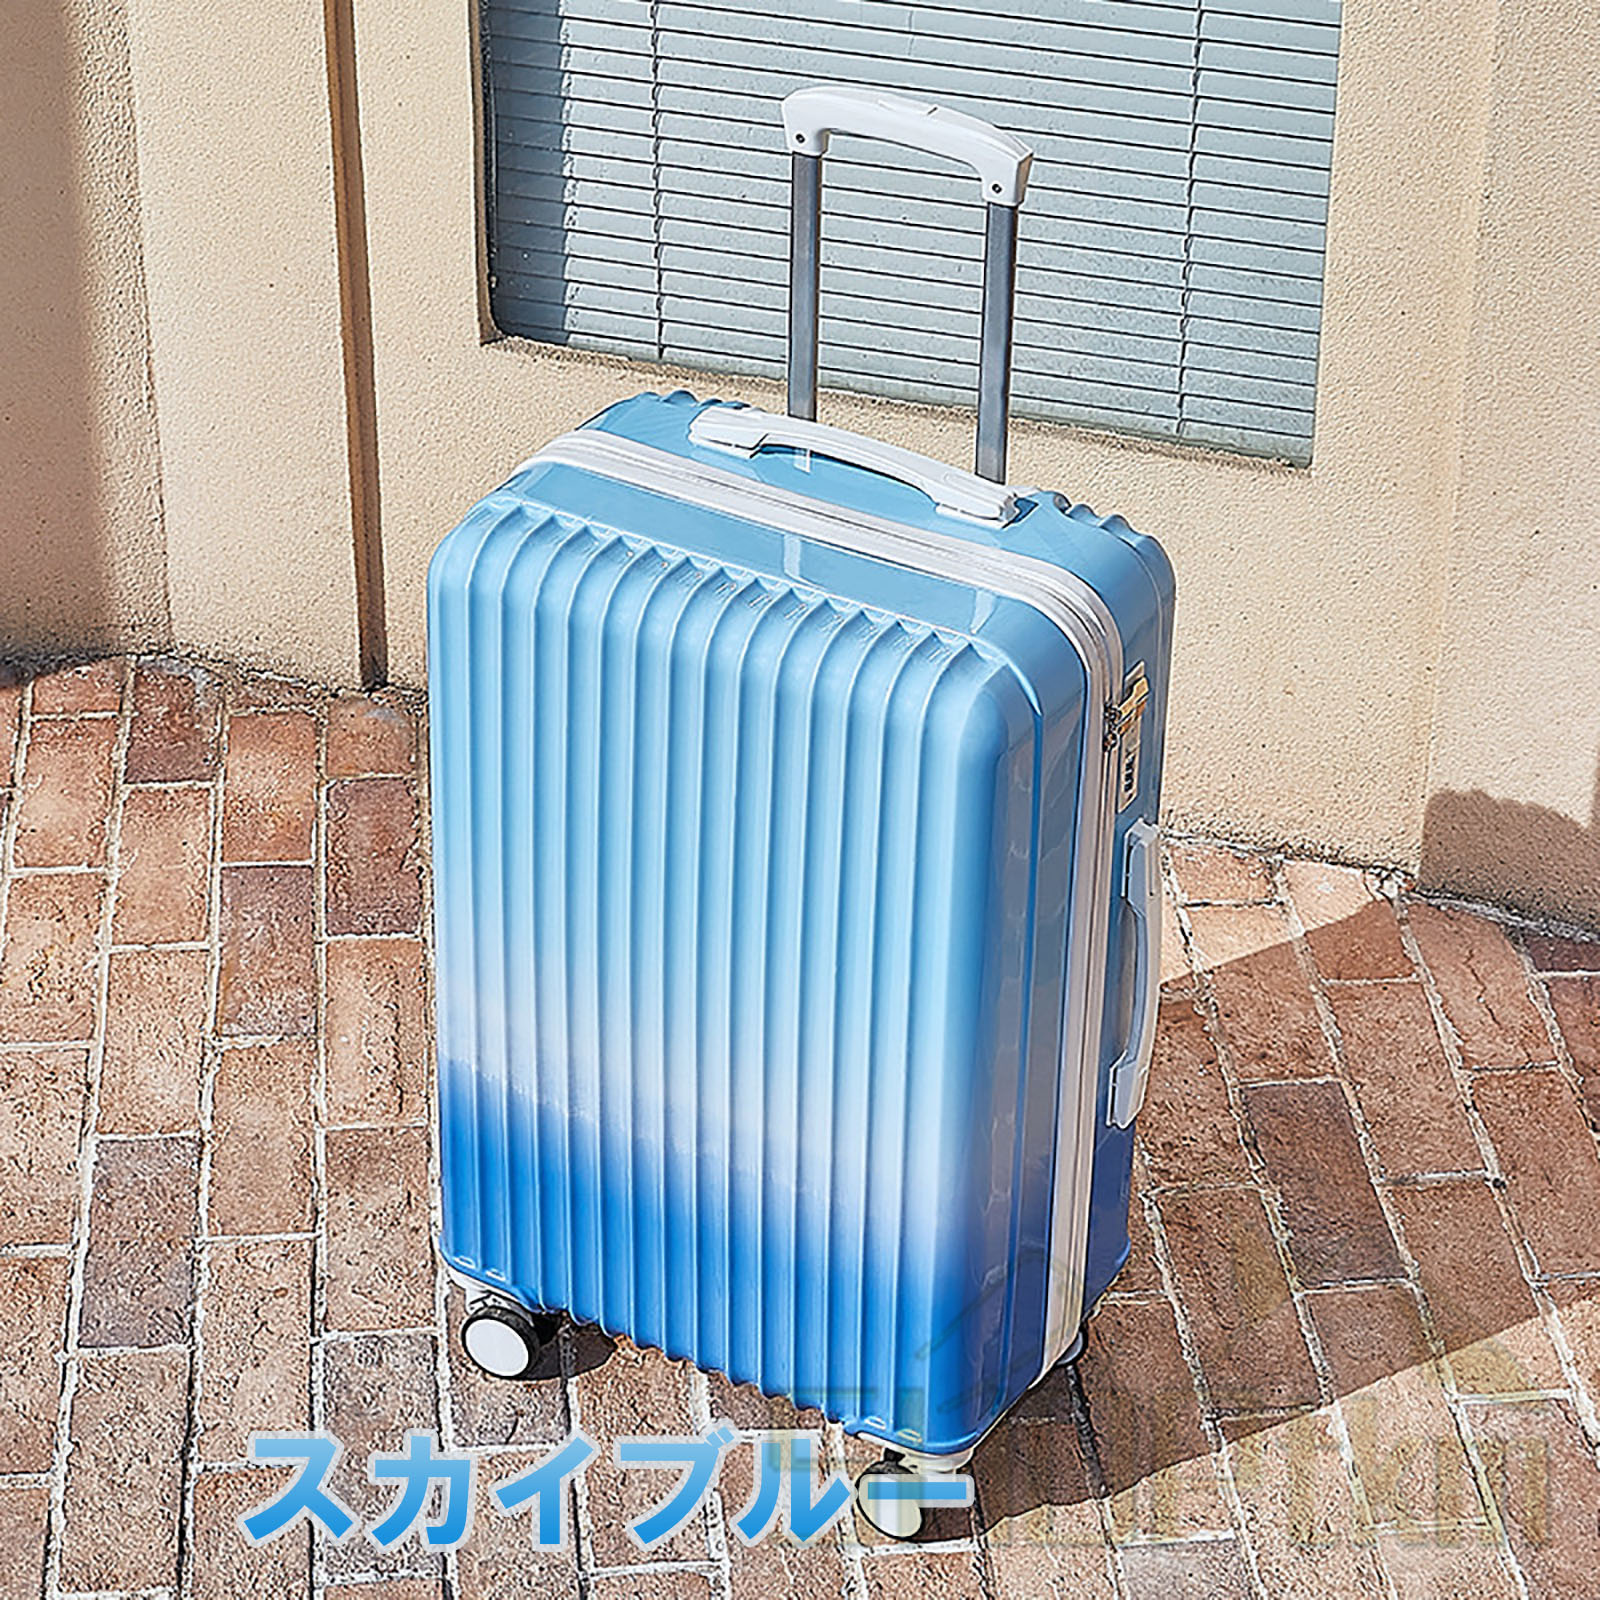 【通販卸値】送料無料◆未使用 スーツケース 機内持ち込み 小型軽量 グラデーション 可愛い キャリーバッグ LUN2116-48 ショルダーバッグ付 ピンク M182 スーツケース、トランク一般